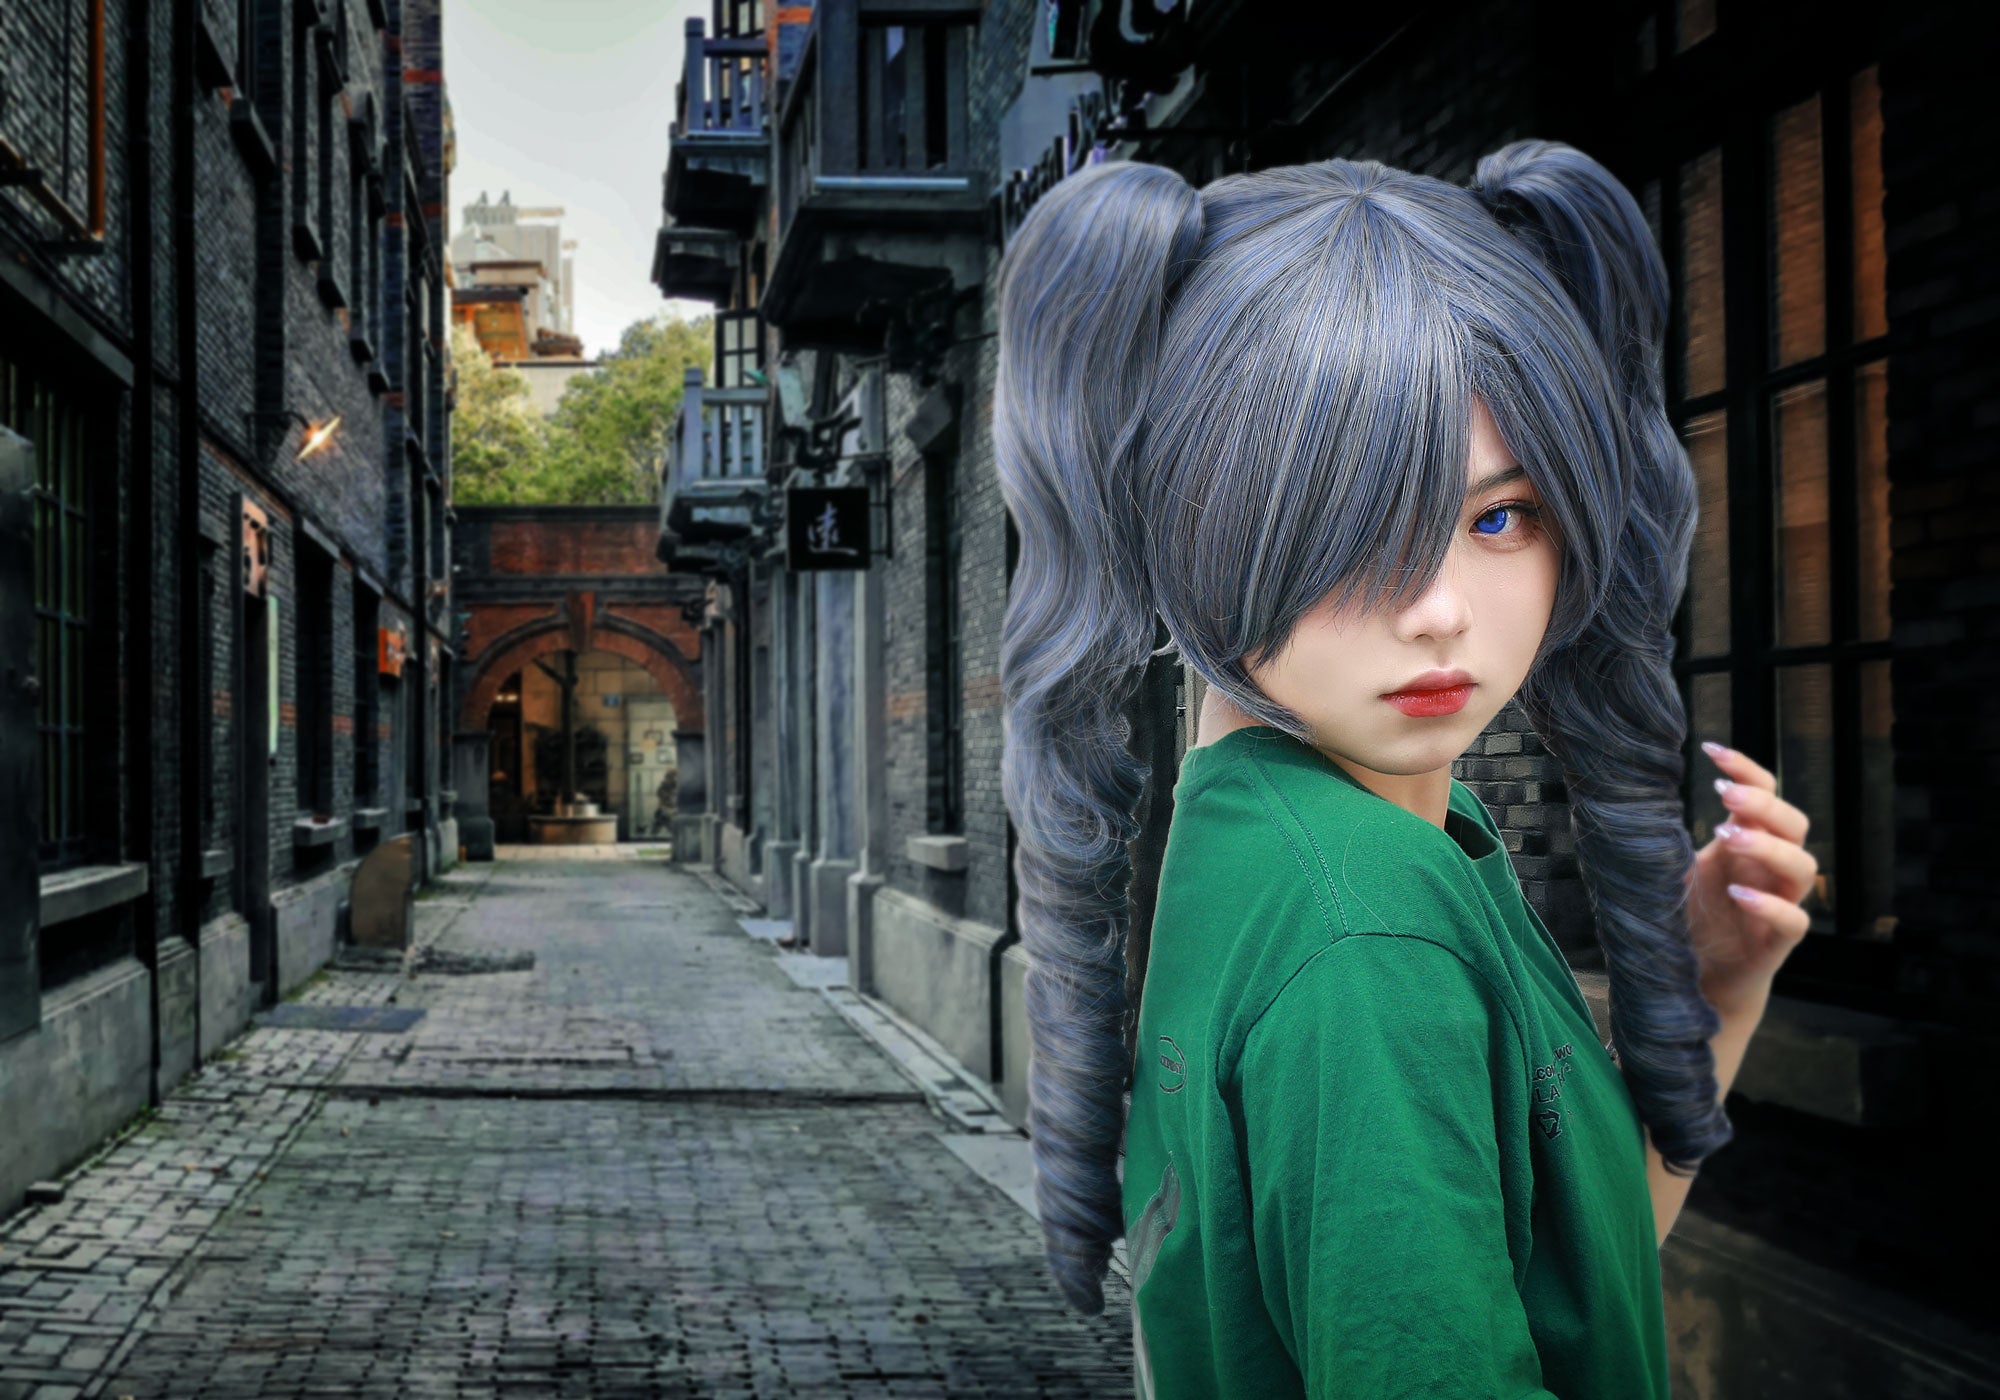 Kuroshitsuji Ciel Phantomhive Cosplay perruque Goth mignon Loli cheveux longs bouclés deux nattes gris taille unique